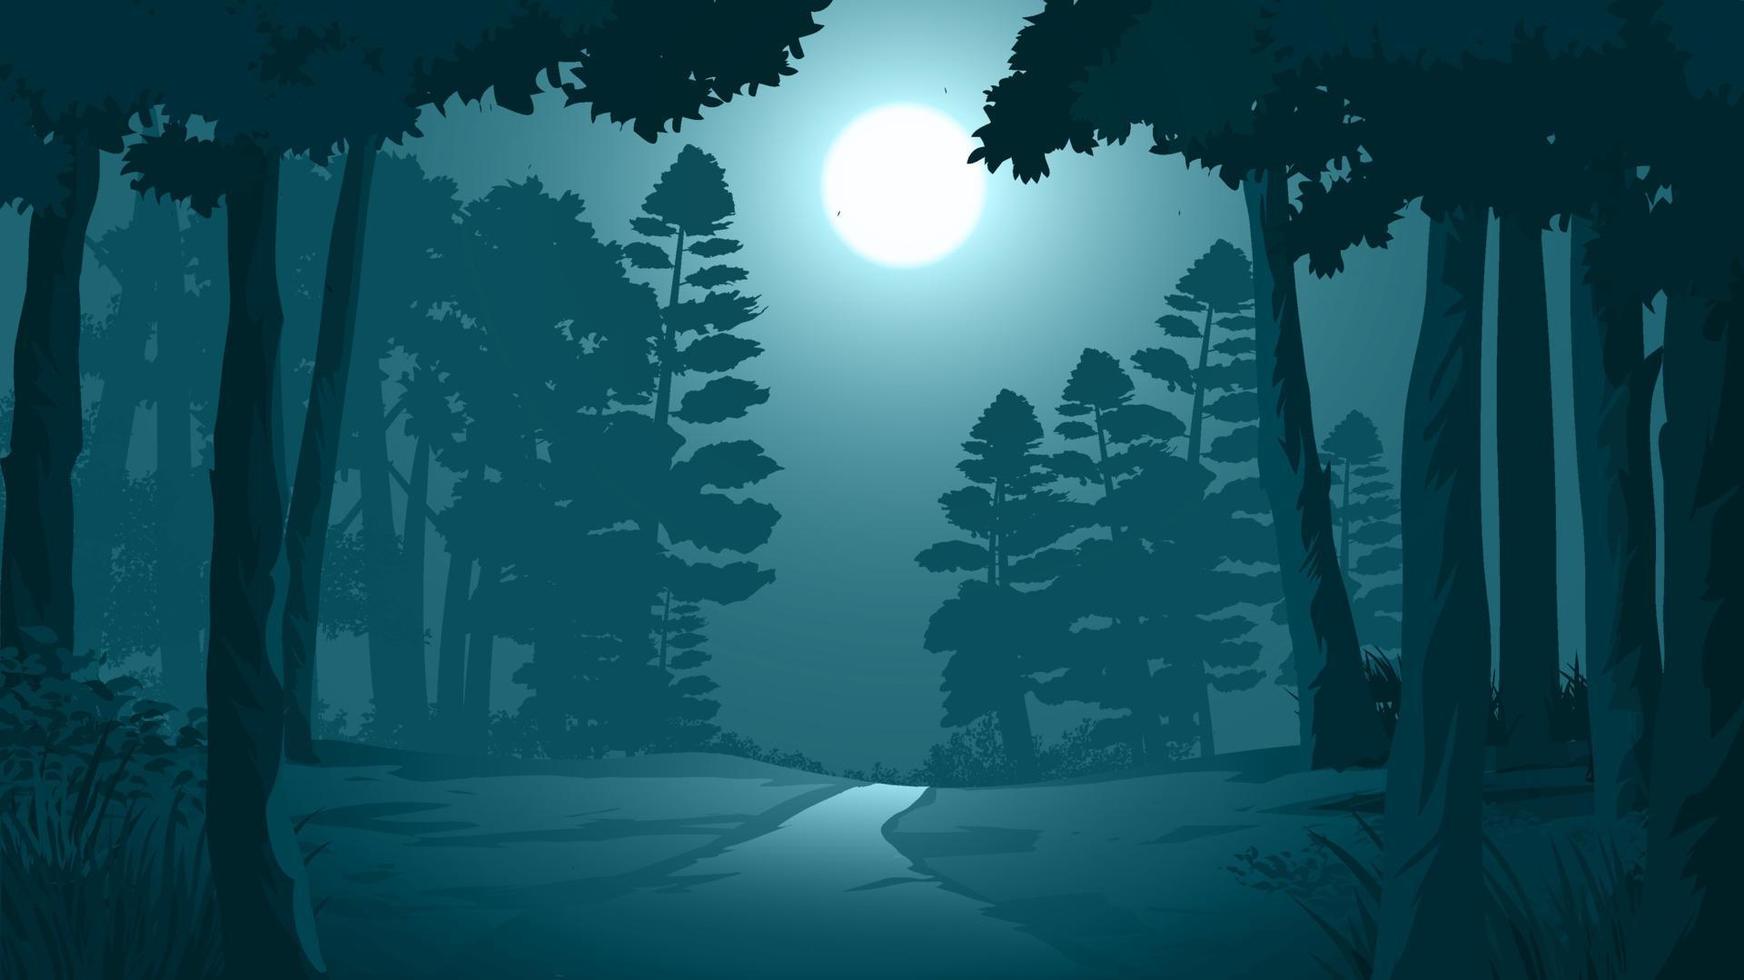 väg genom mörk skog illustration med månsken vektor